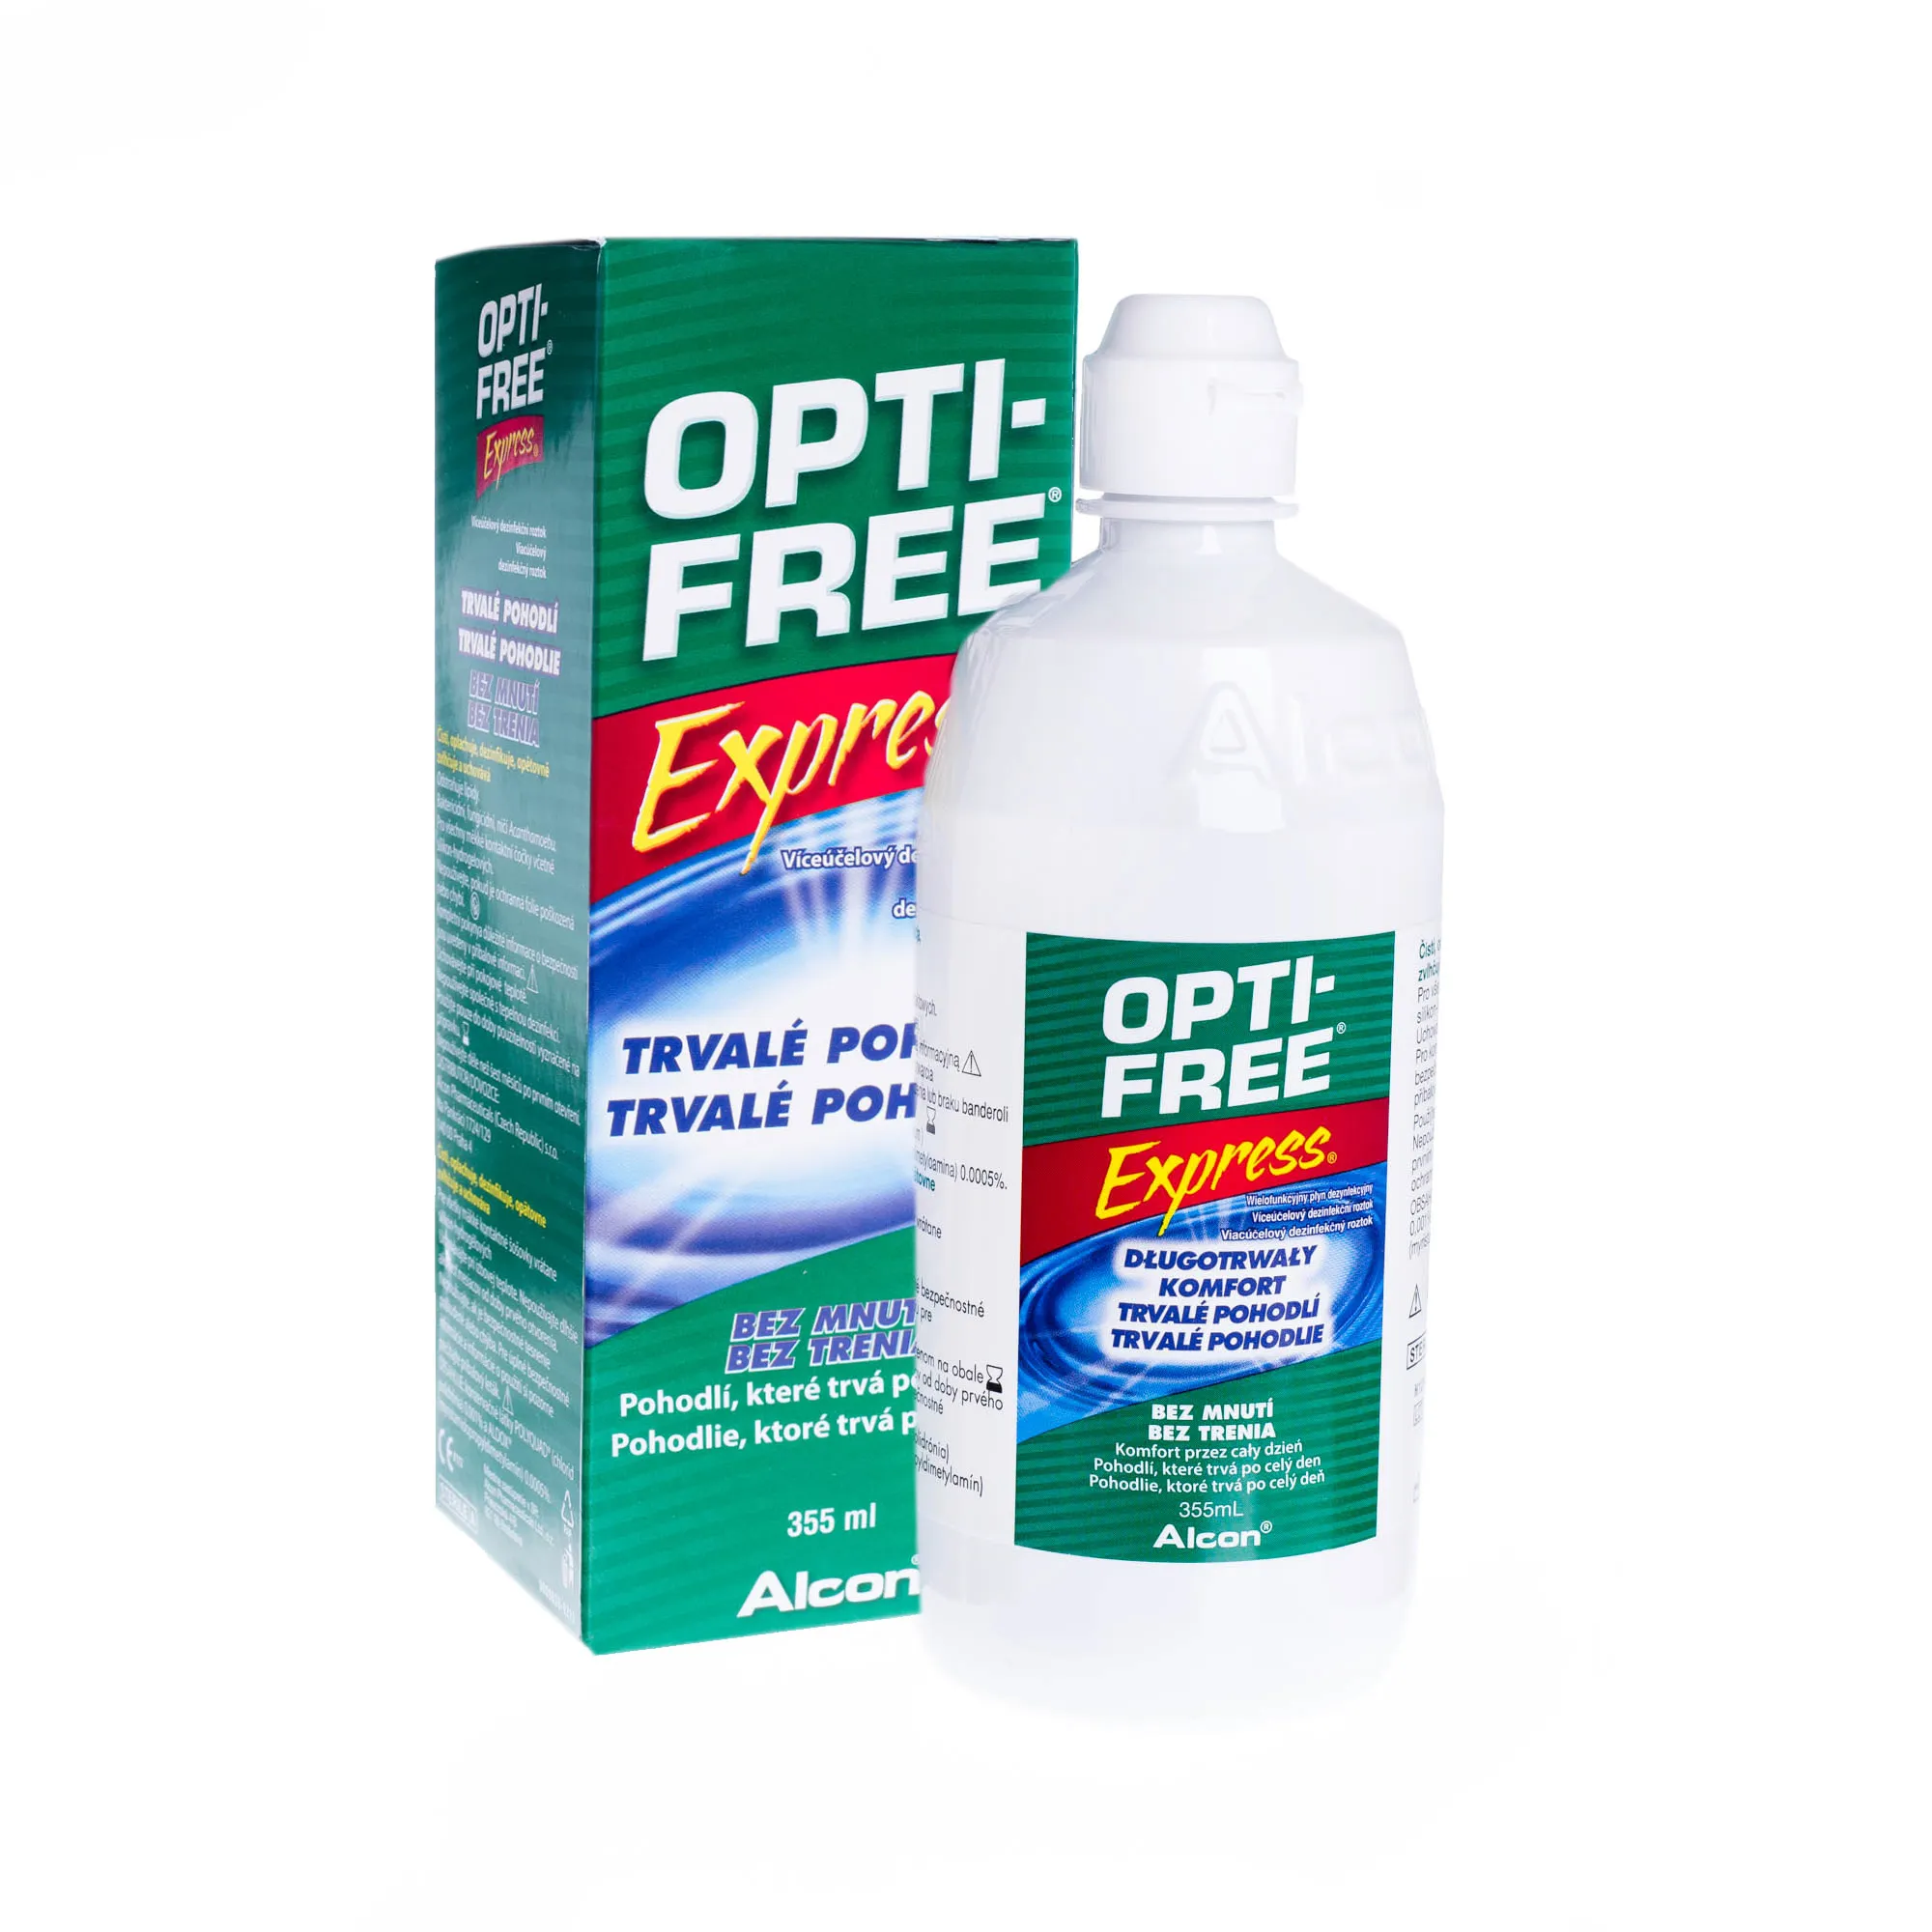 Opti-free Express długotrwały, wielofunkcyjny płyn dezynfekcyjny, 355 ml